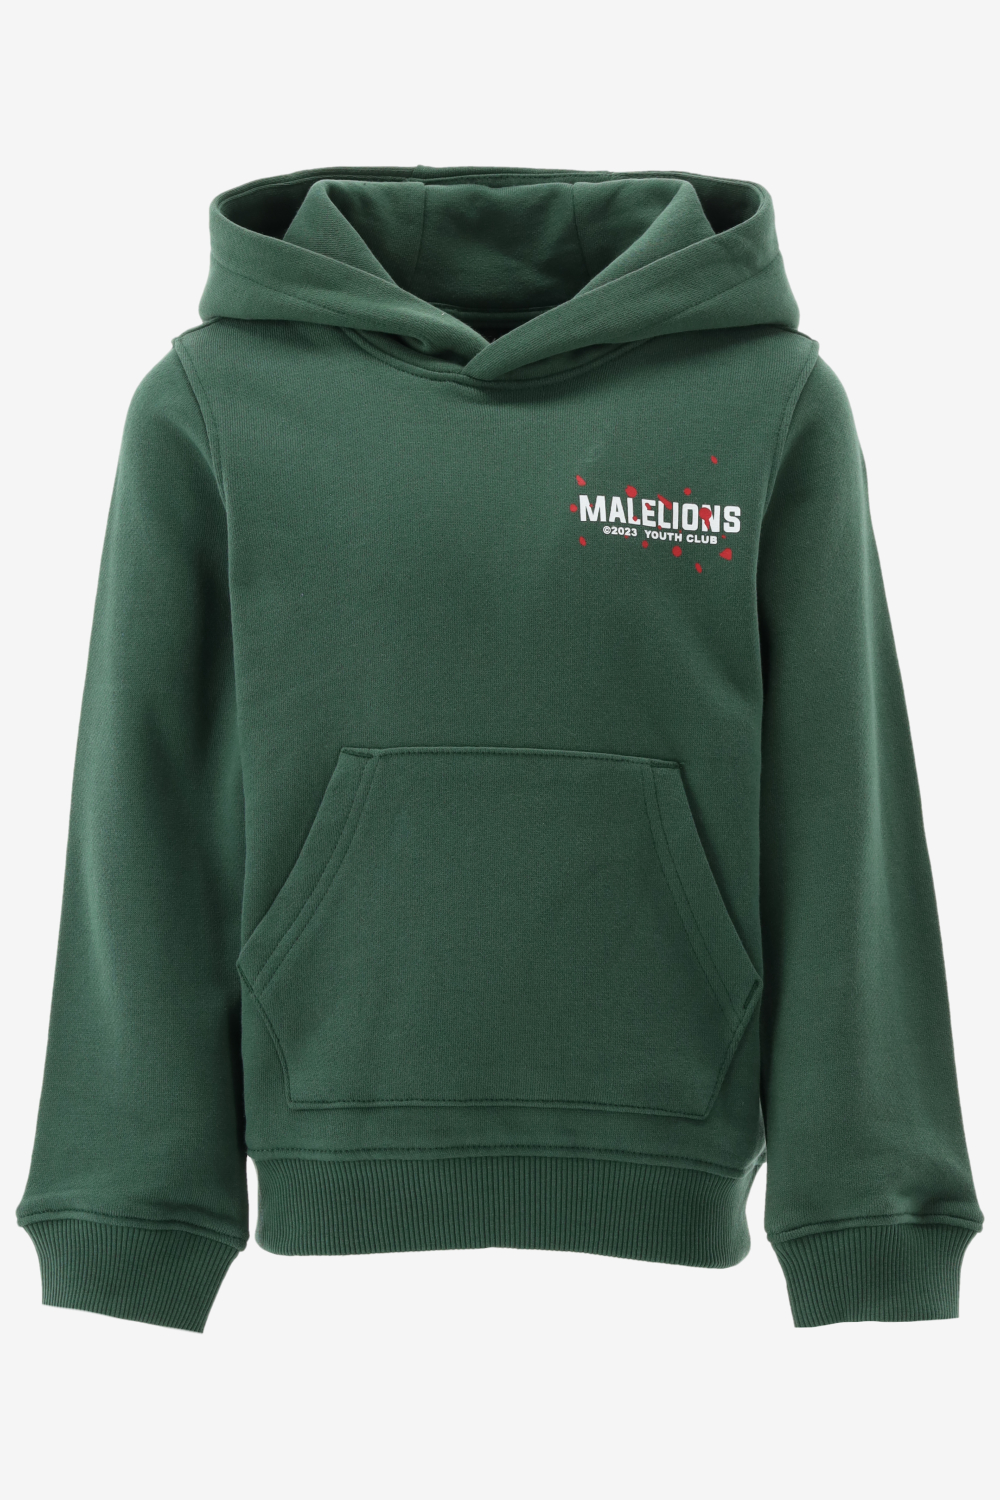 Malelions - Hoodie - Dark Green - Maat 164